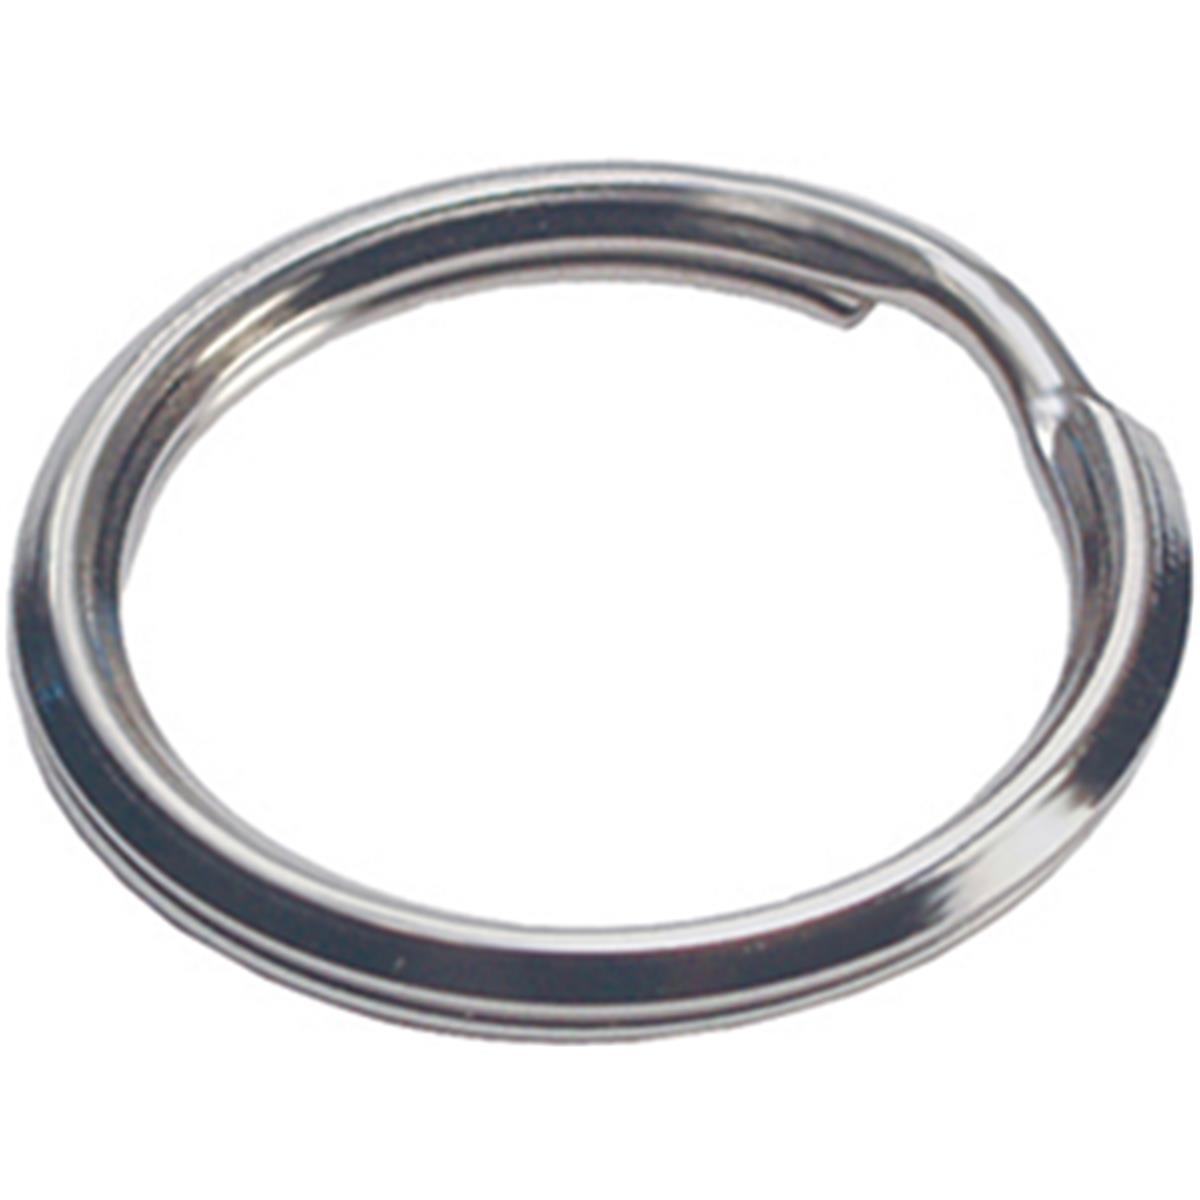 1 In. Nickel-plated Split Key Rings